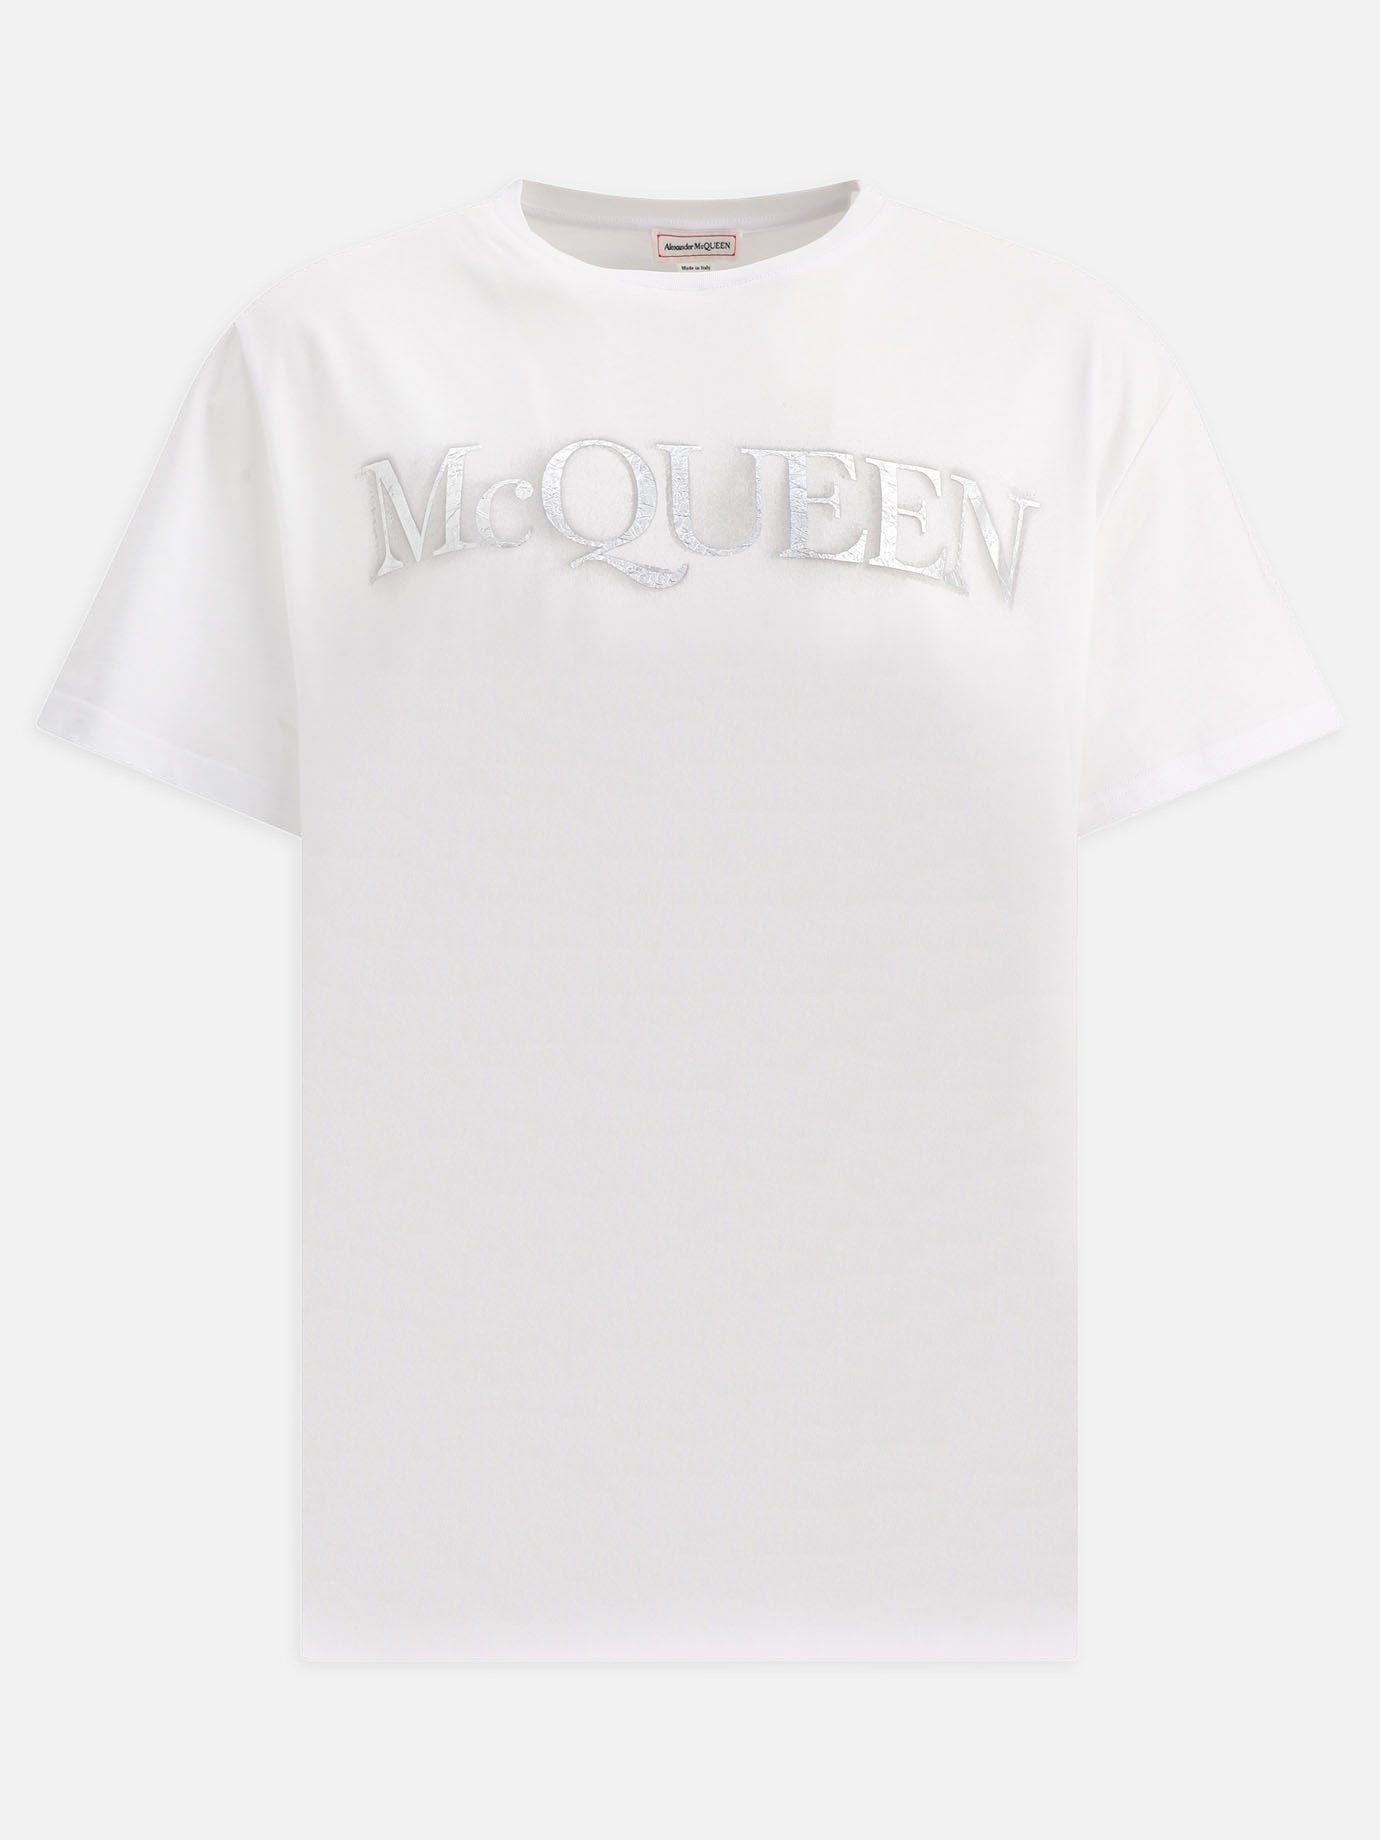 T-shirt  McQueen by Alexander McQueen - 3